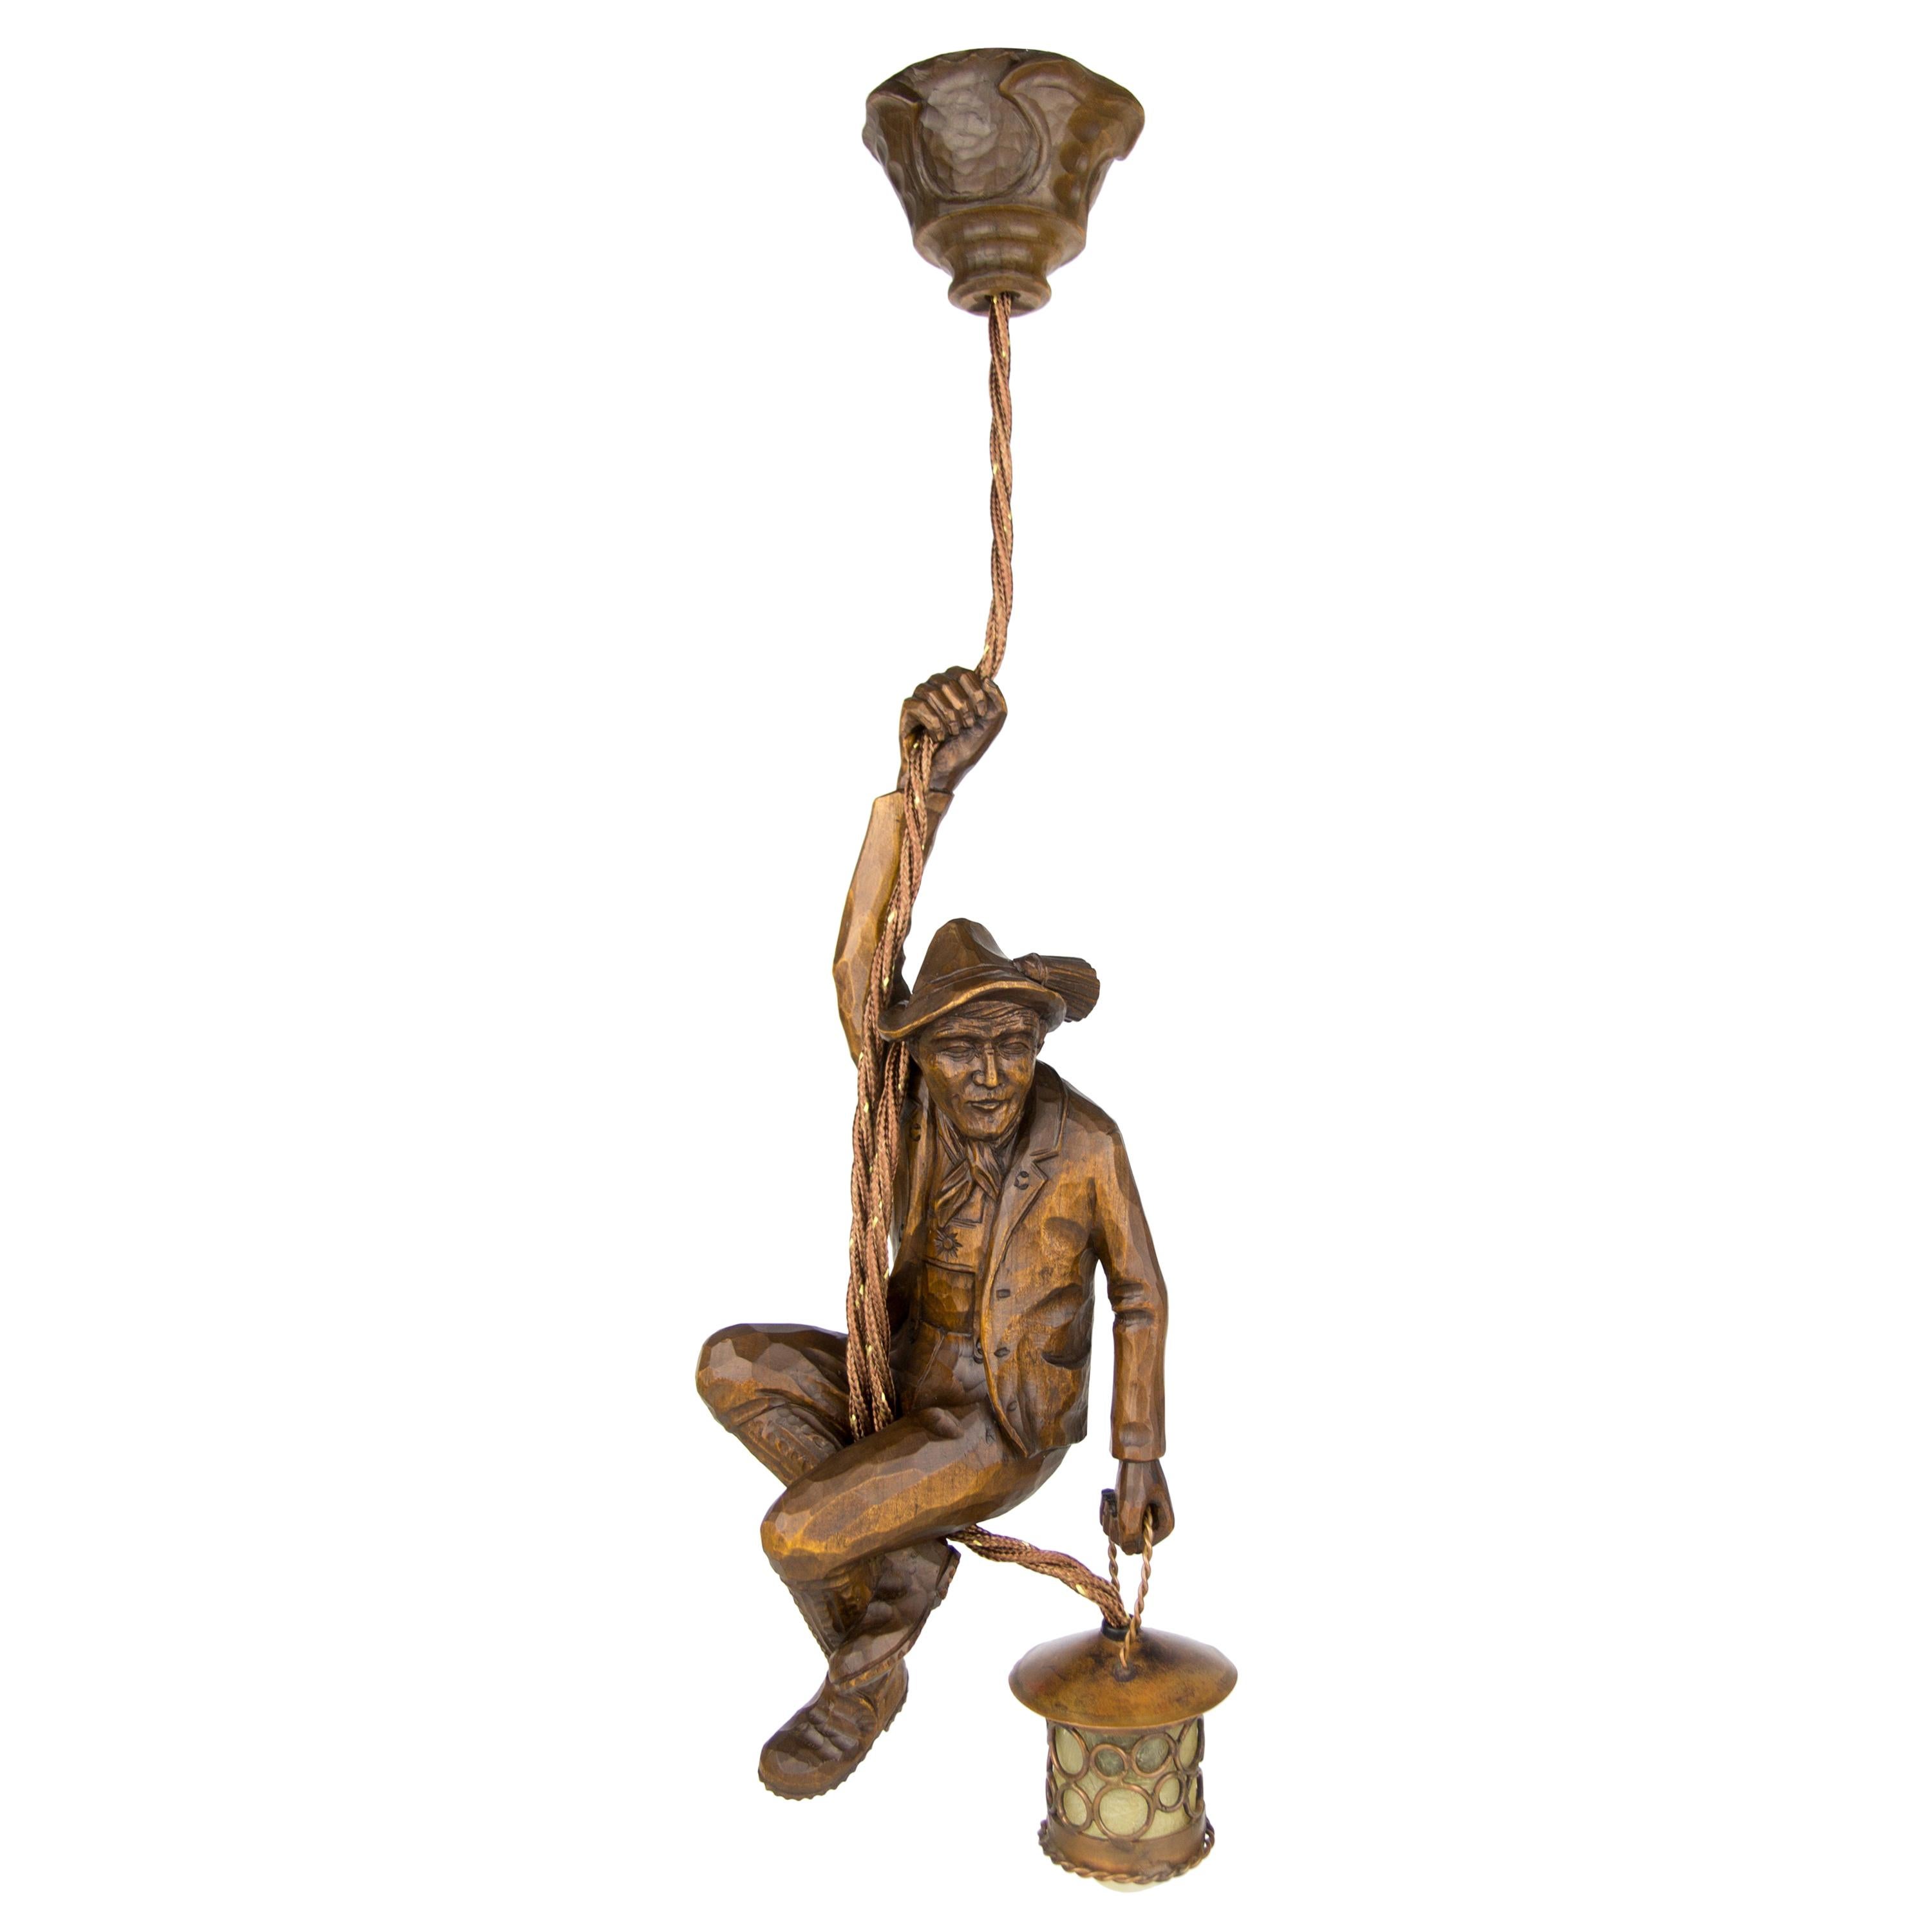 Suspension allemande sculptée à la main, figure de montagne grimpante avec lanterne